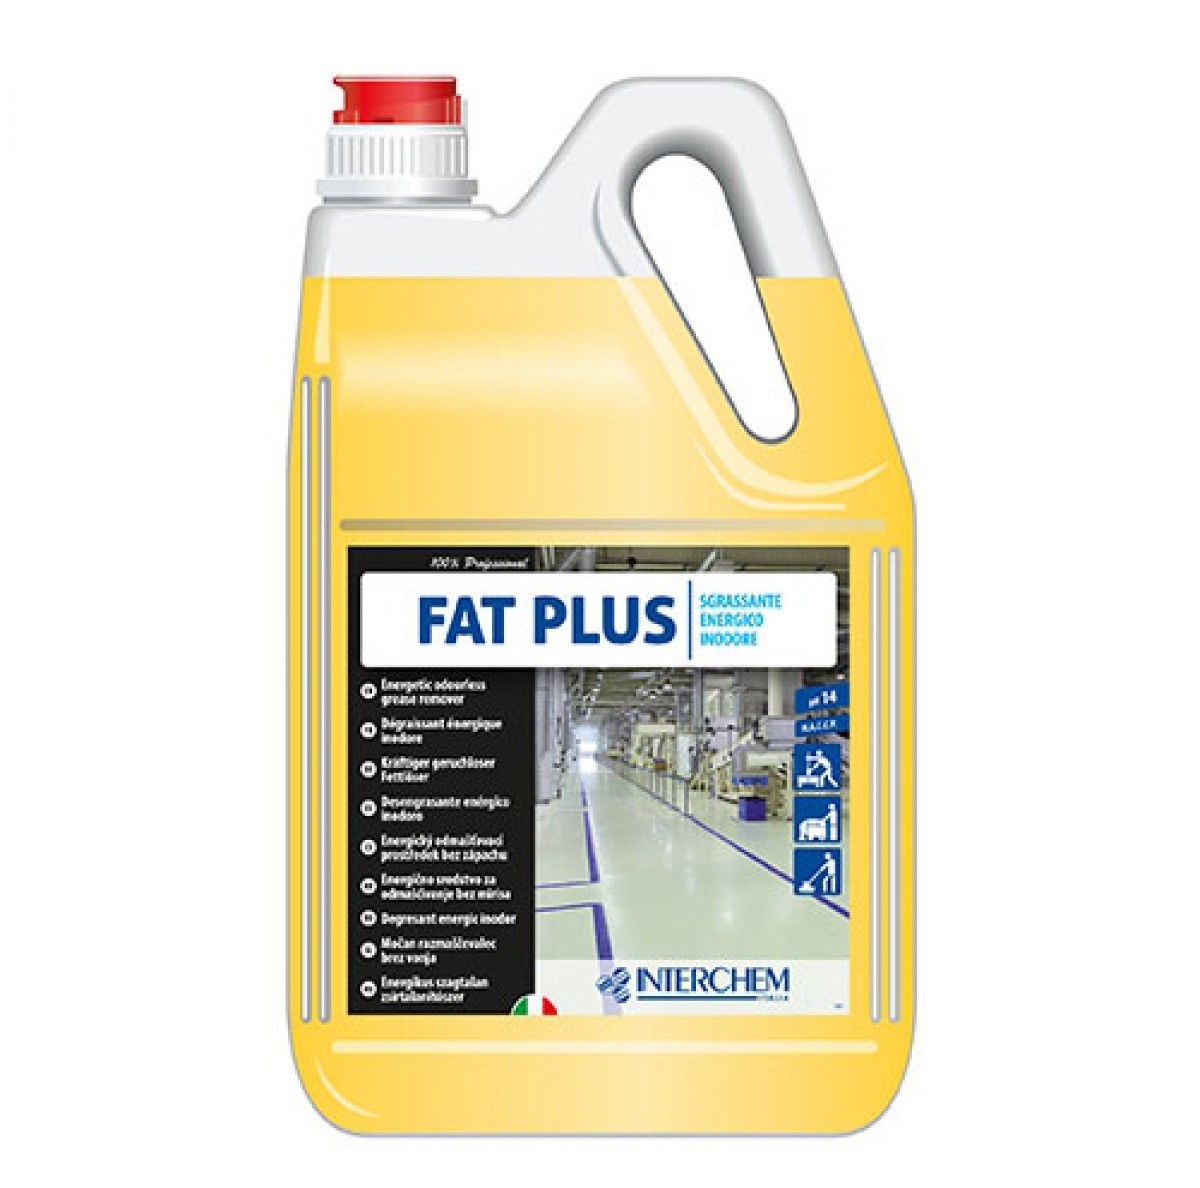 FAT PLUS - 5,7 lit / Energično sredstvo za odmašćivanje podova bez mirisa / Za masnoću organskog porijetla / Za klaonice i mesnice